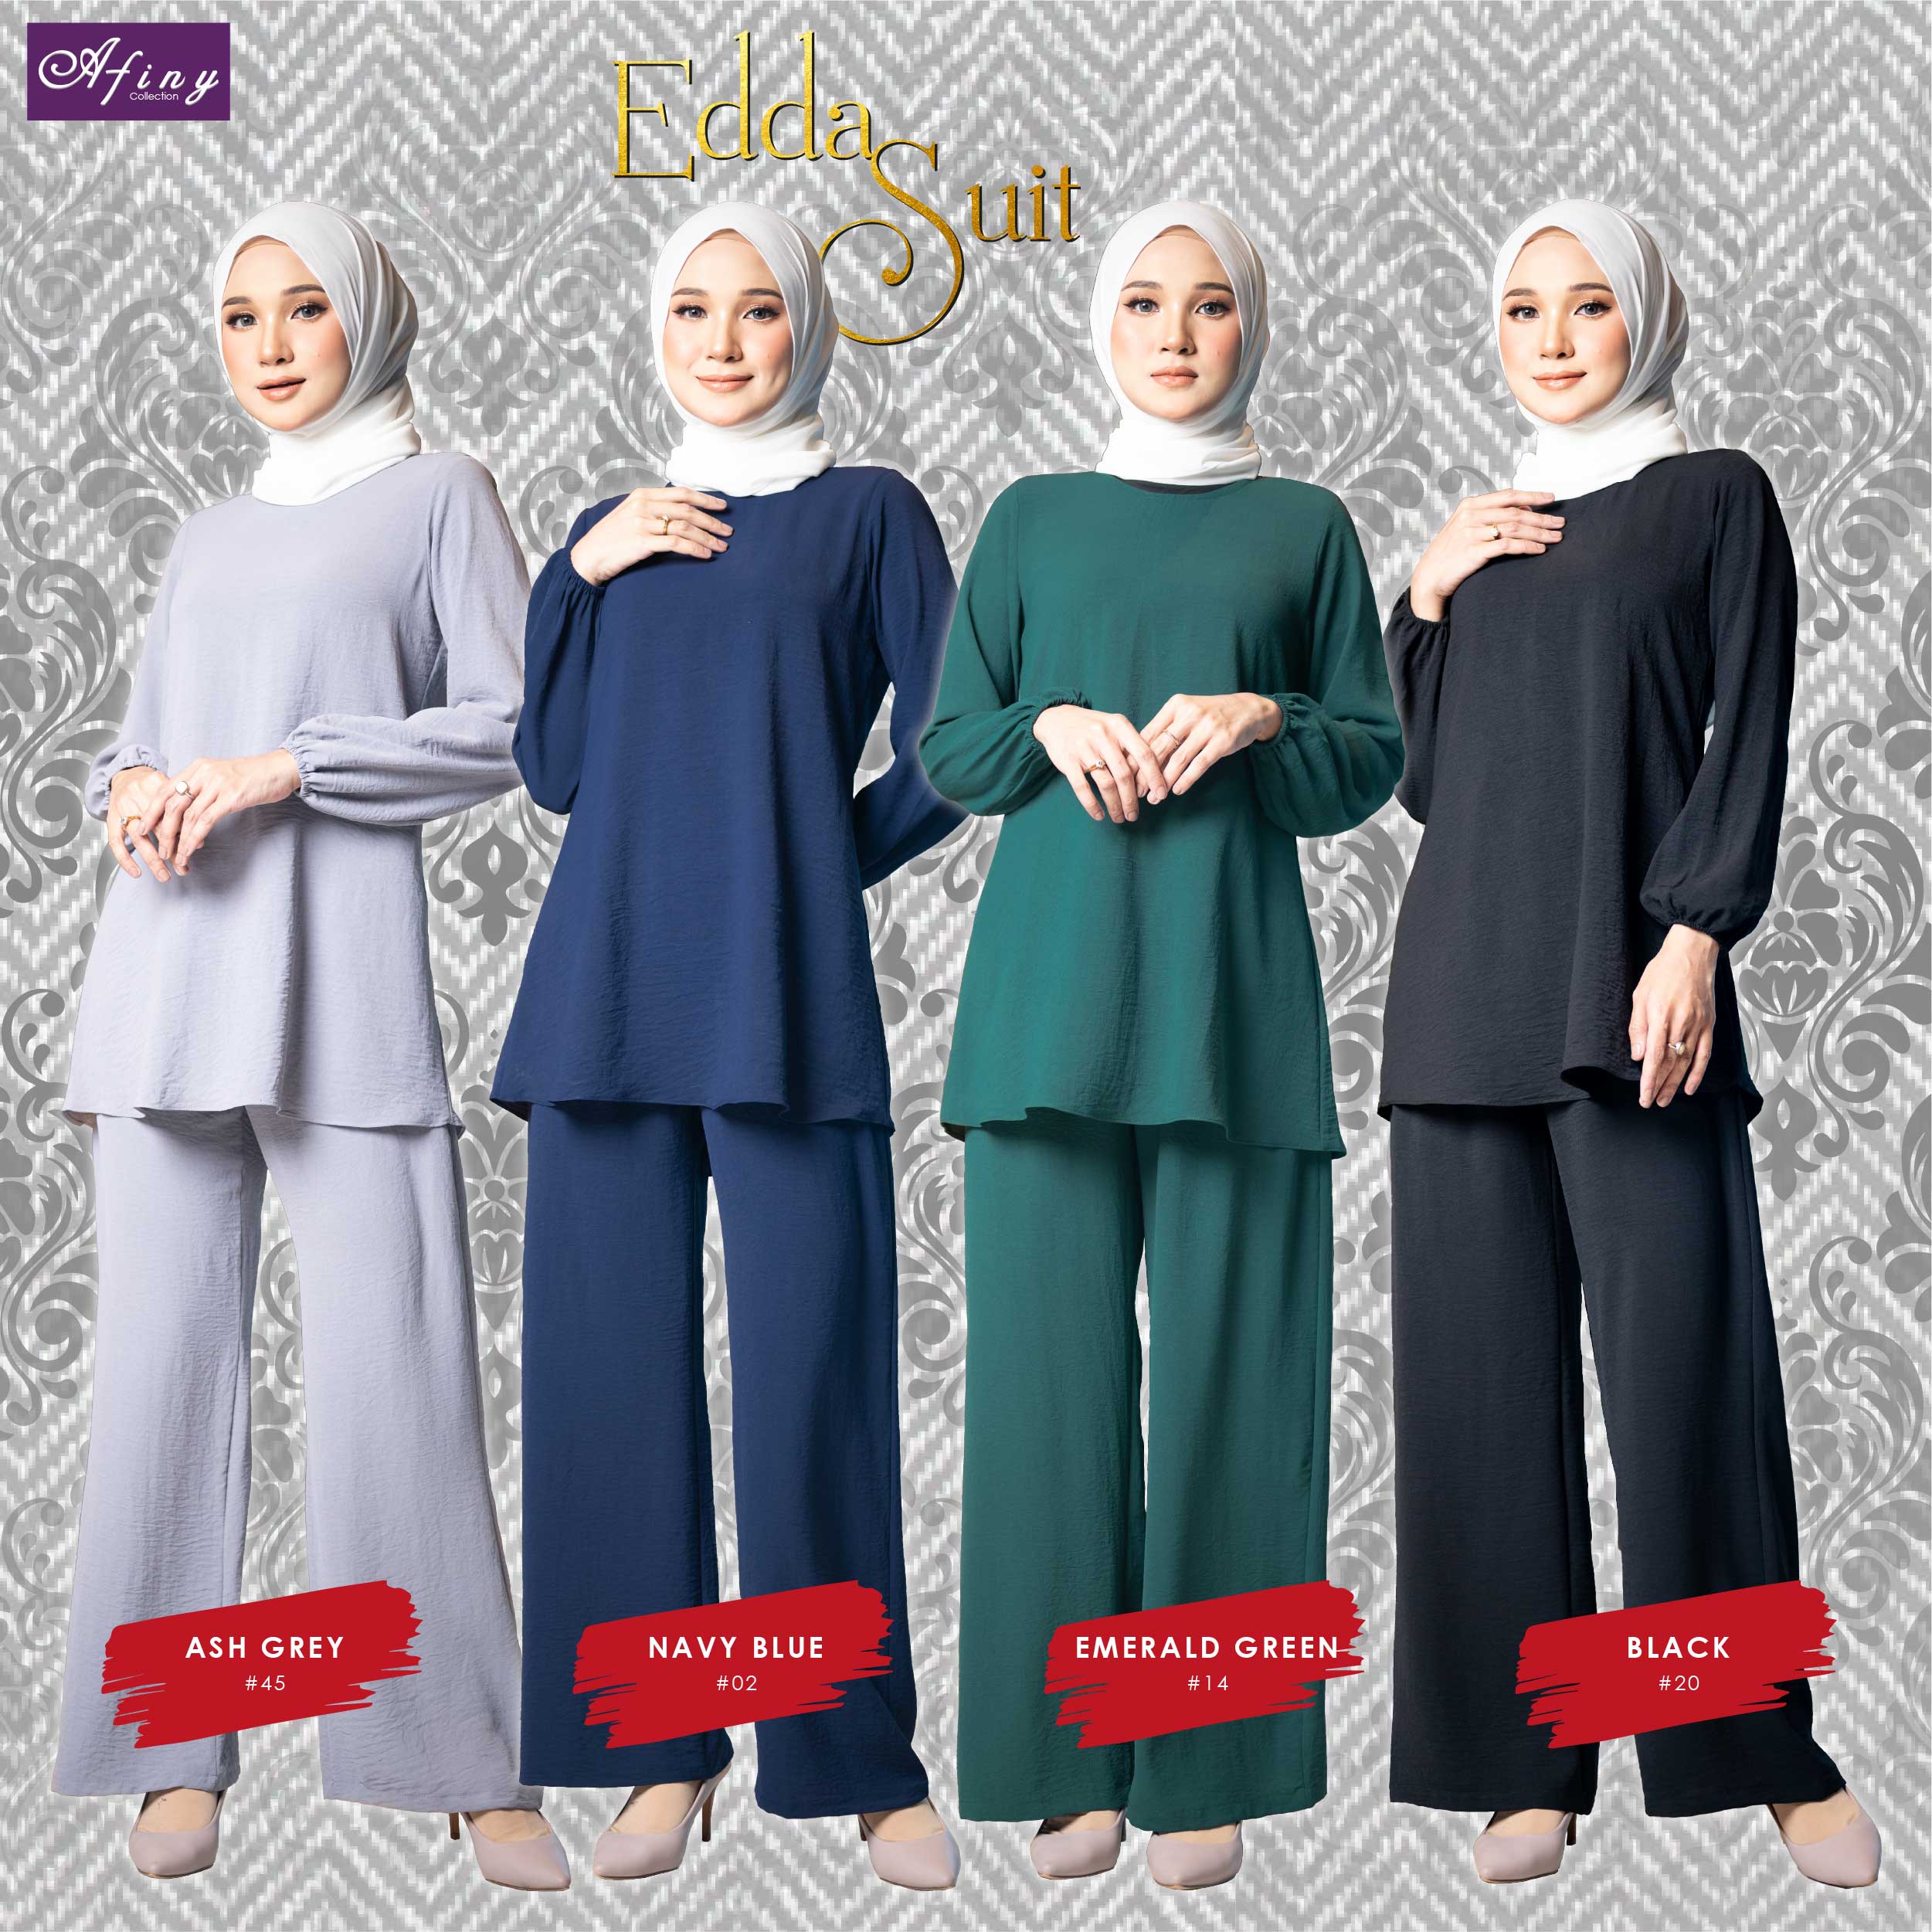 Edda Suit - NEW Muslimah Suit launched!!